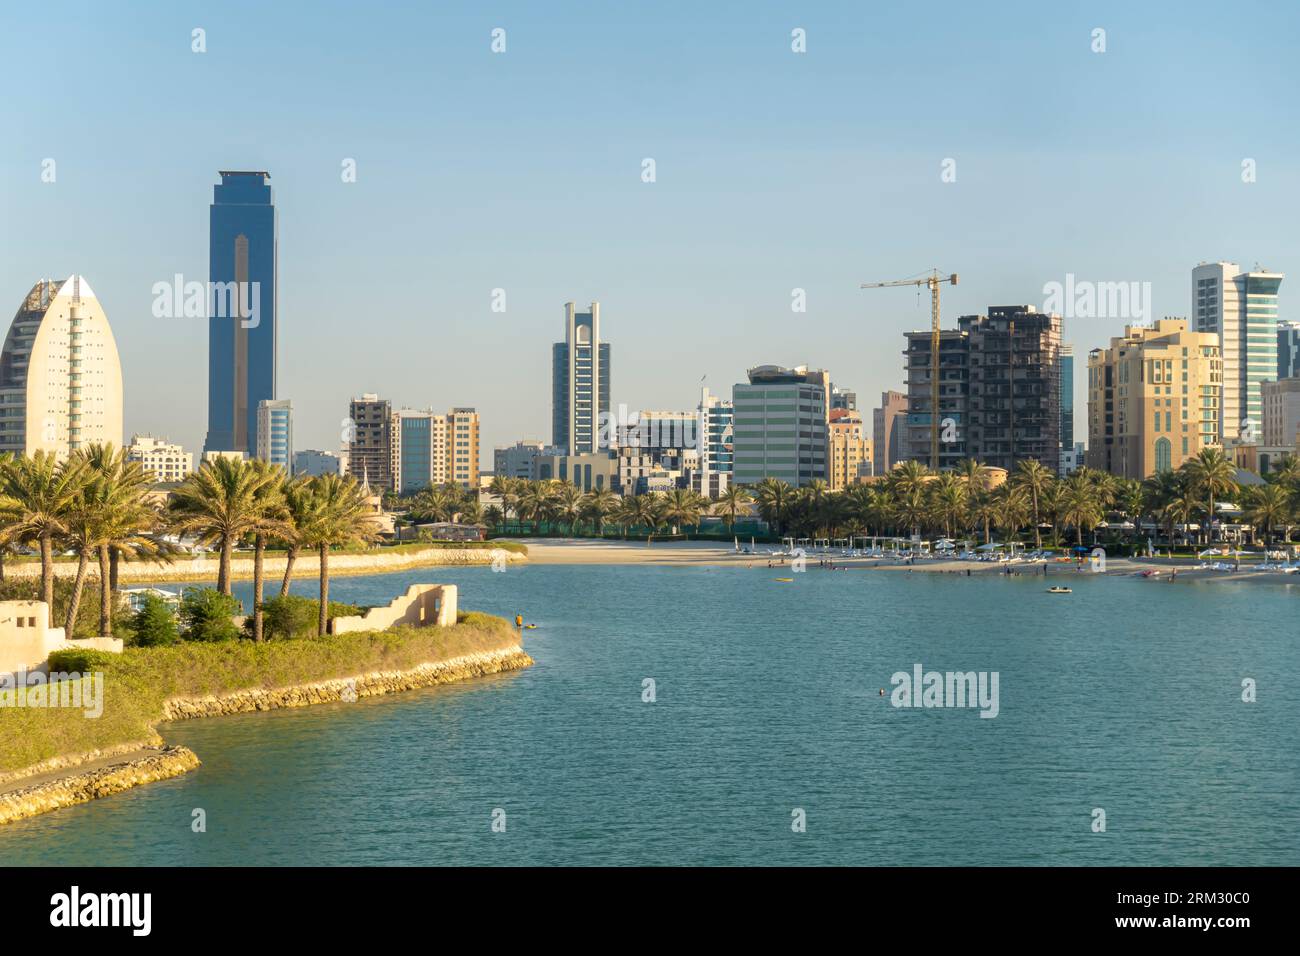 Skyline der Bucht von Bahrain – Hotels, Gebäude, Wolkenkratzer in der Bucht von Bahrain Stockfoto